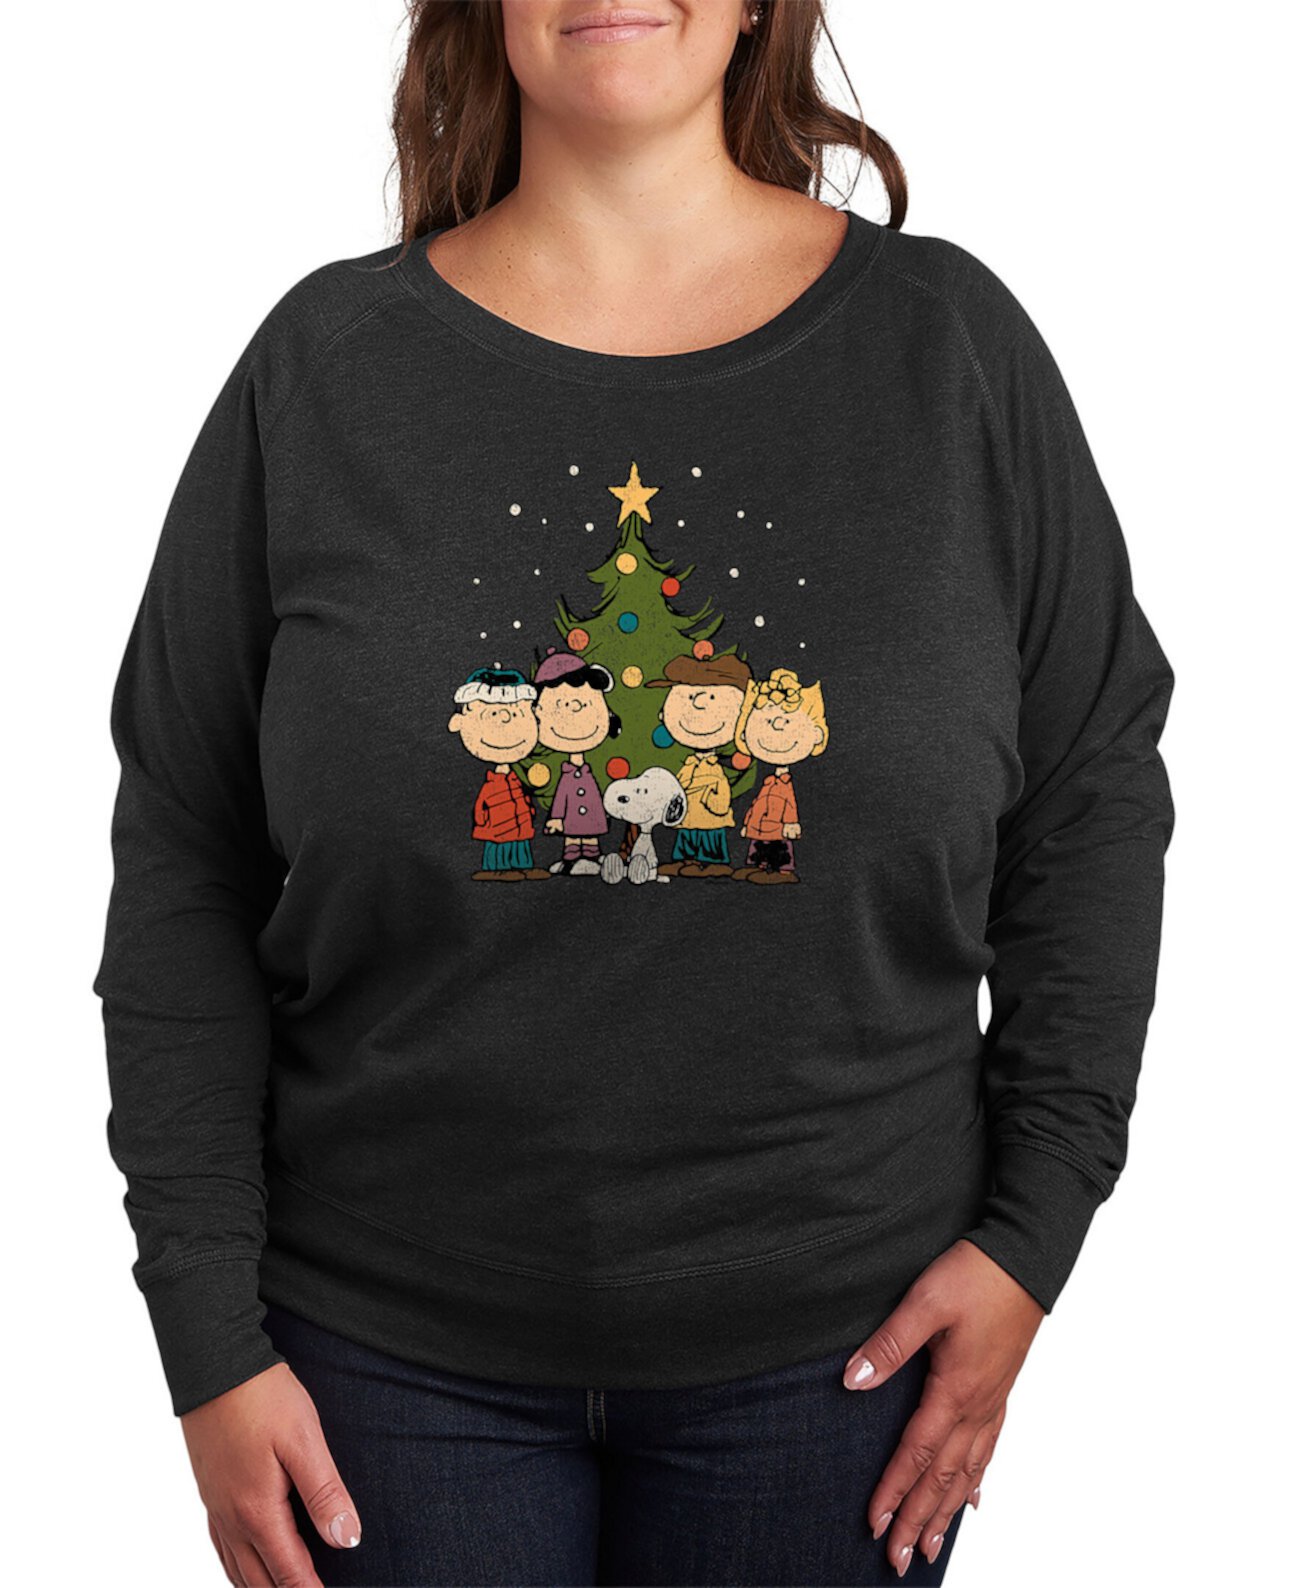 Модный пуловер с длинными рукавами и рисунком «Рождественская елка» больших размеров Air Waves больших размеров Hybrid Apparel